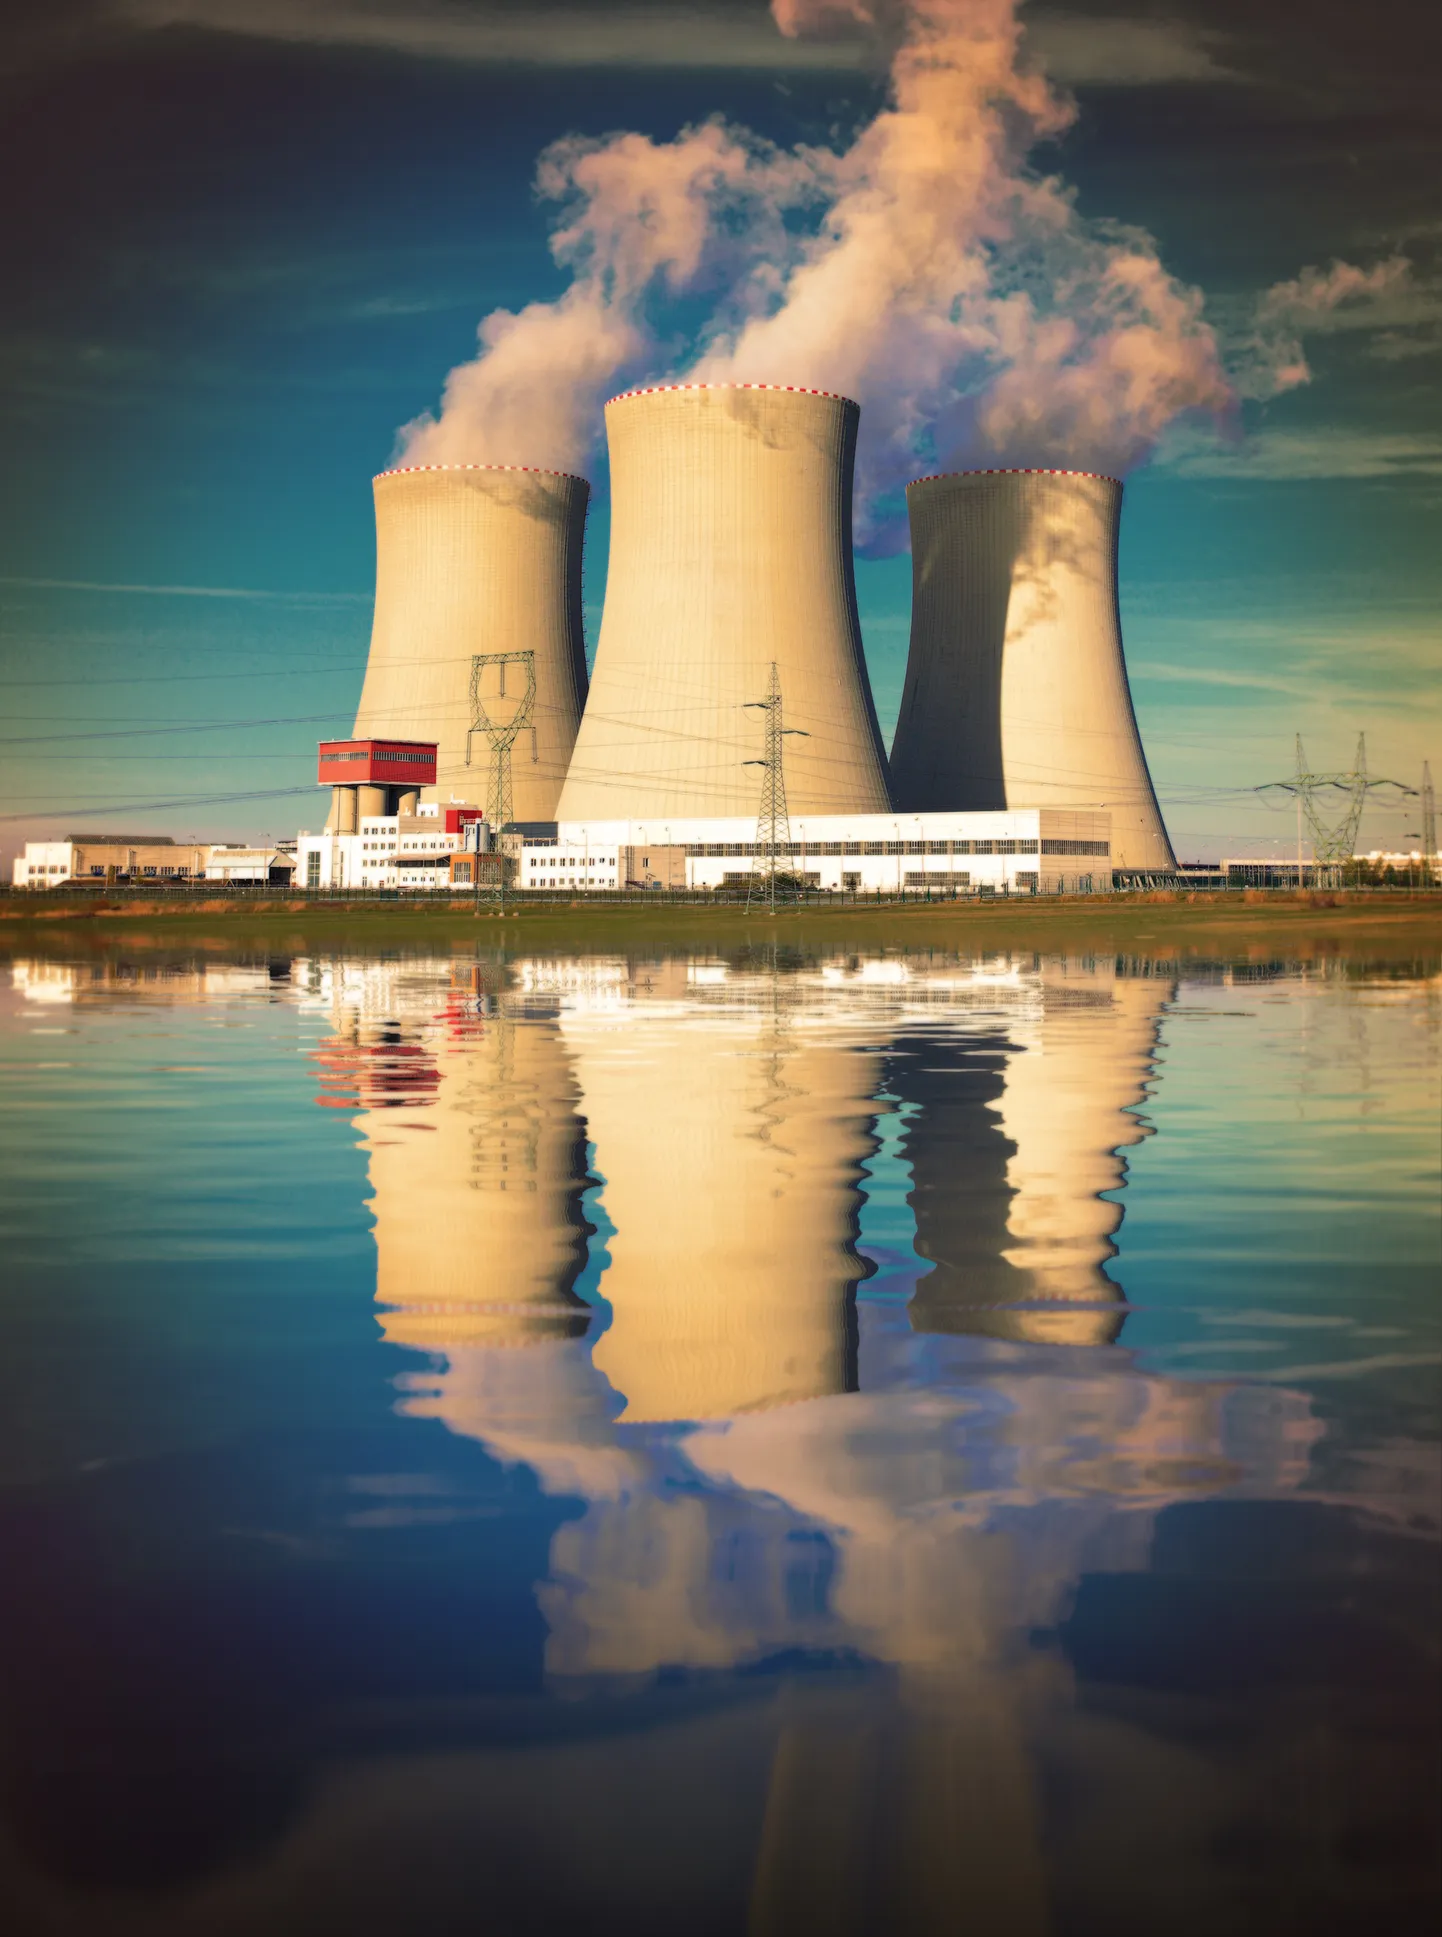 Большие АЭС вызывают опасения у защитников среды. Малые модульные реакторы (SMR) - более надежны, безопасны и с уменьшенным количеством радиоактивных отходов.